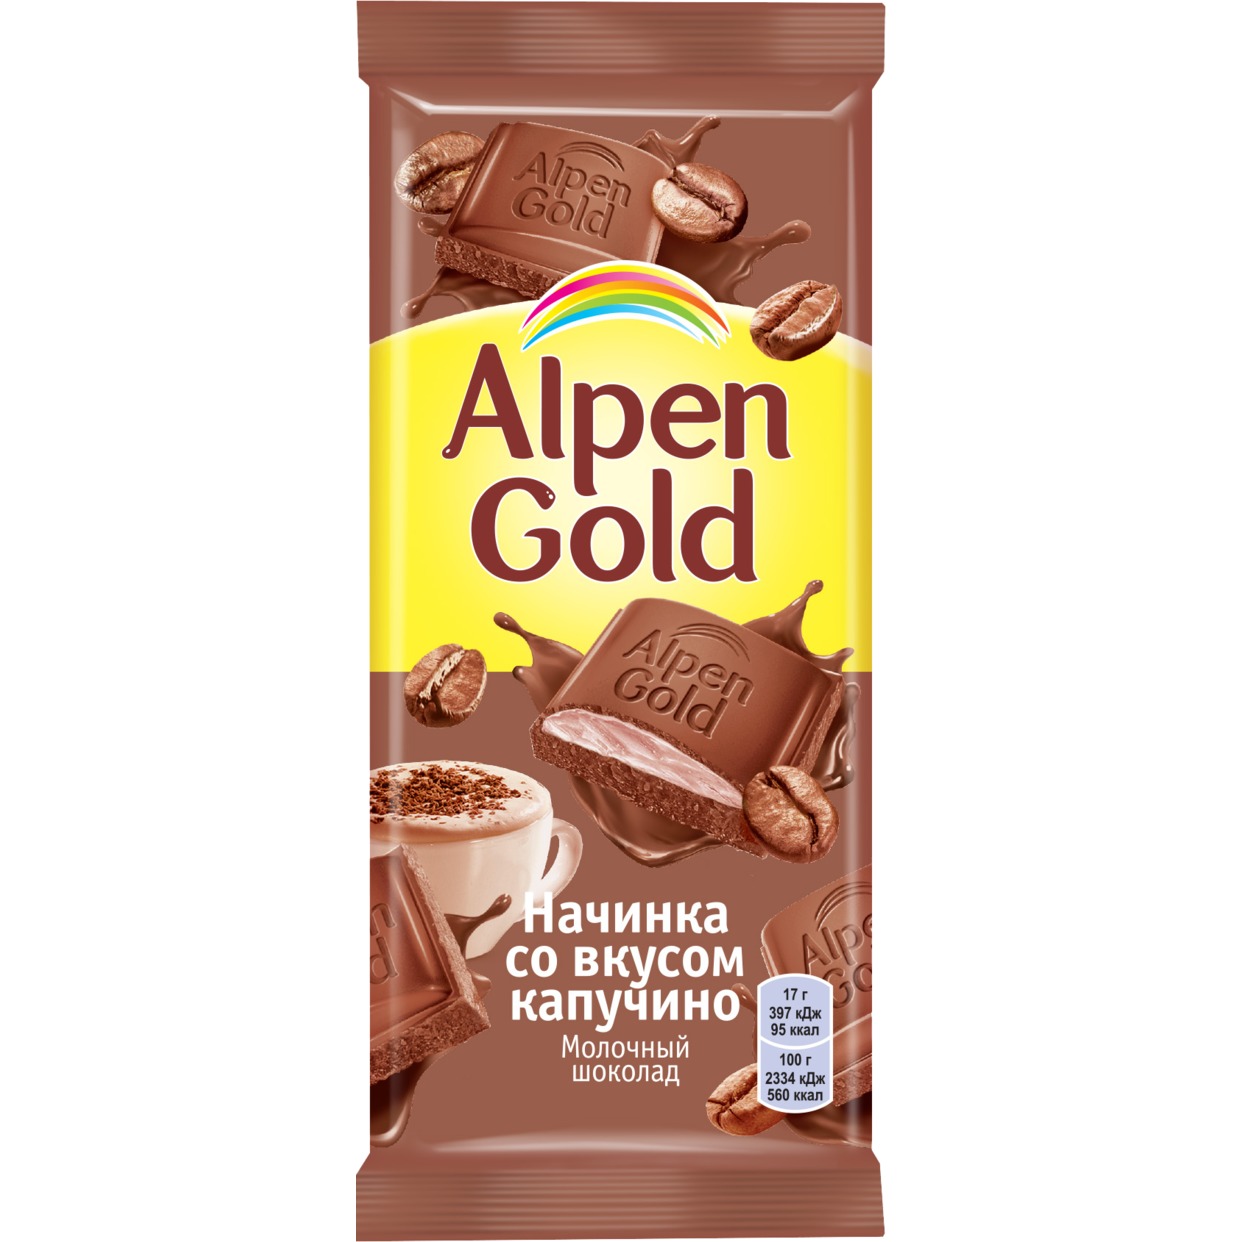 Шоколад молочный Alpen Gold Альпен Гольд с начинкой со вкусом капучино, 85г по акции в Пятерочке